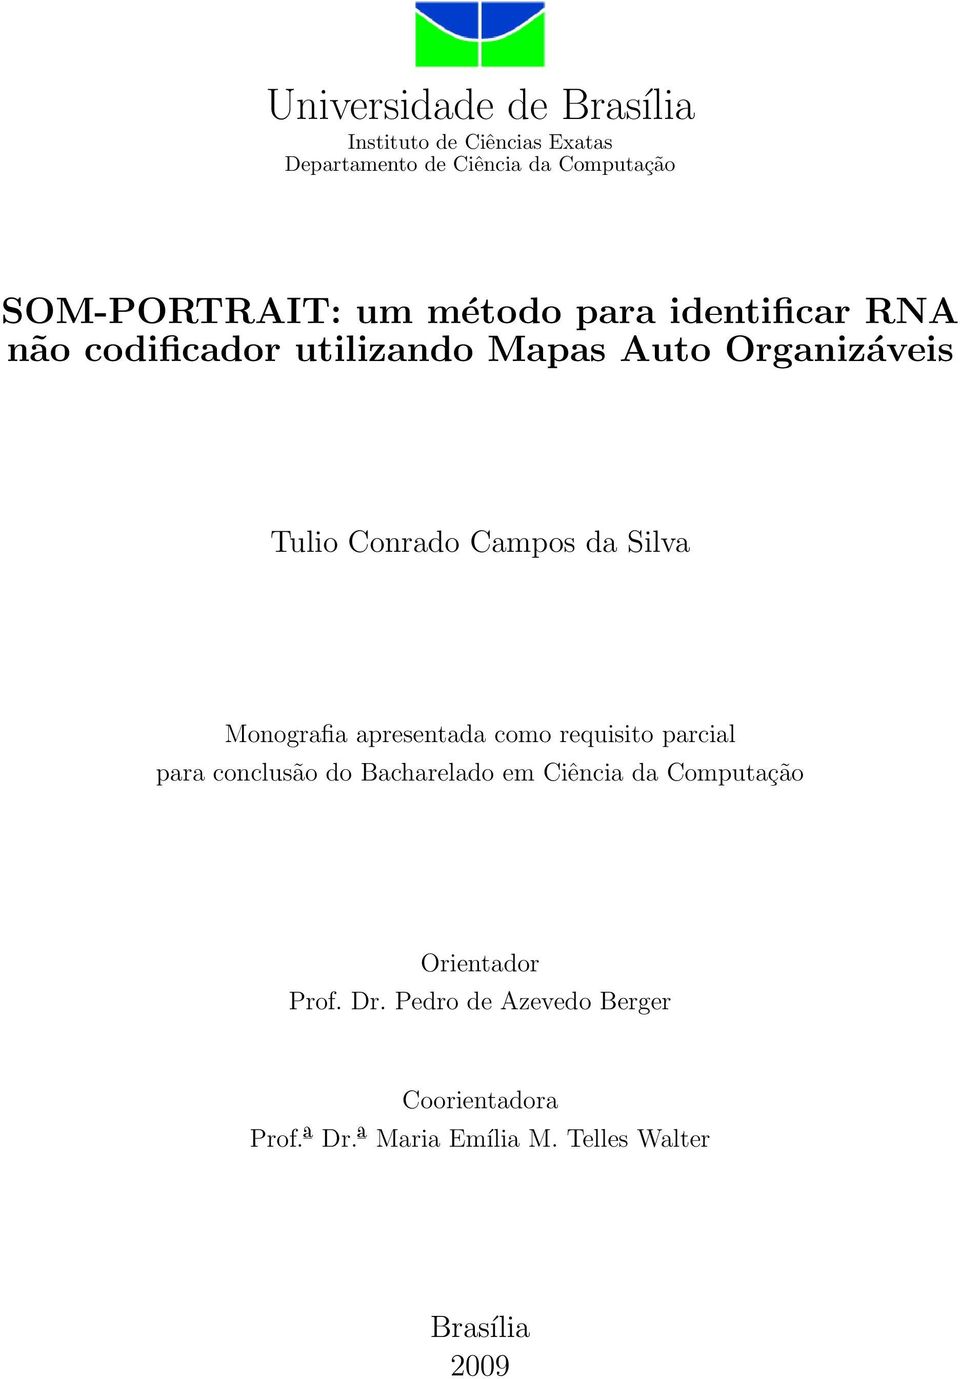 Monografia apresentada como requisito parcial para conclusão do Bacharelado em Ciência da Computação